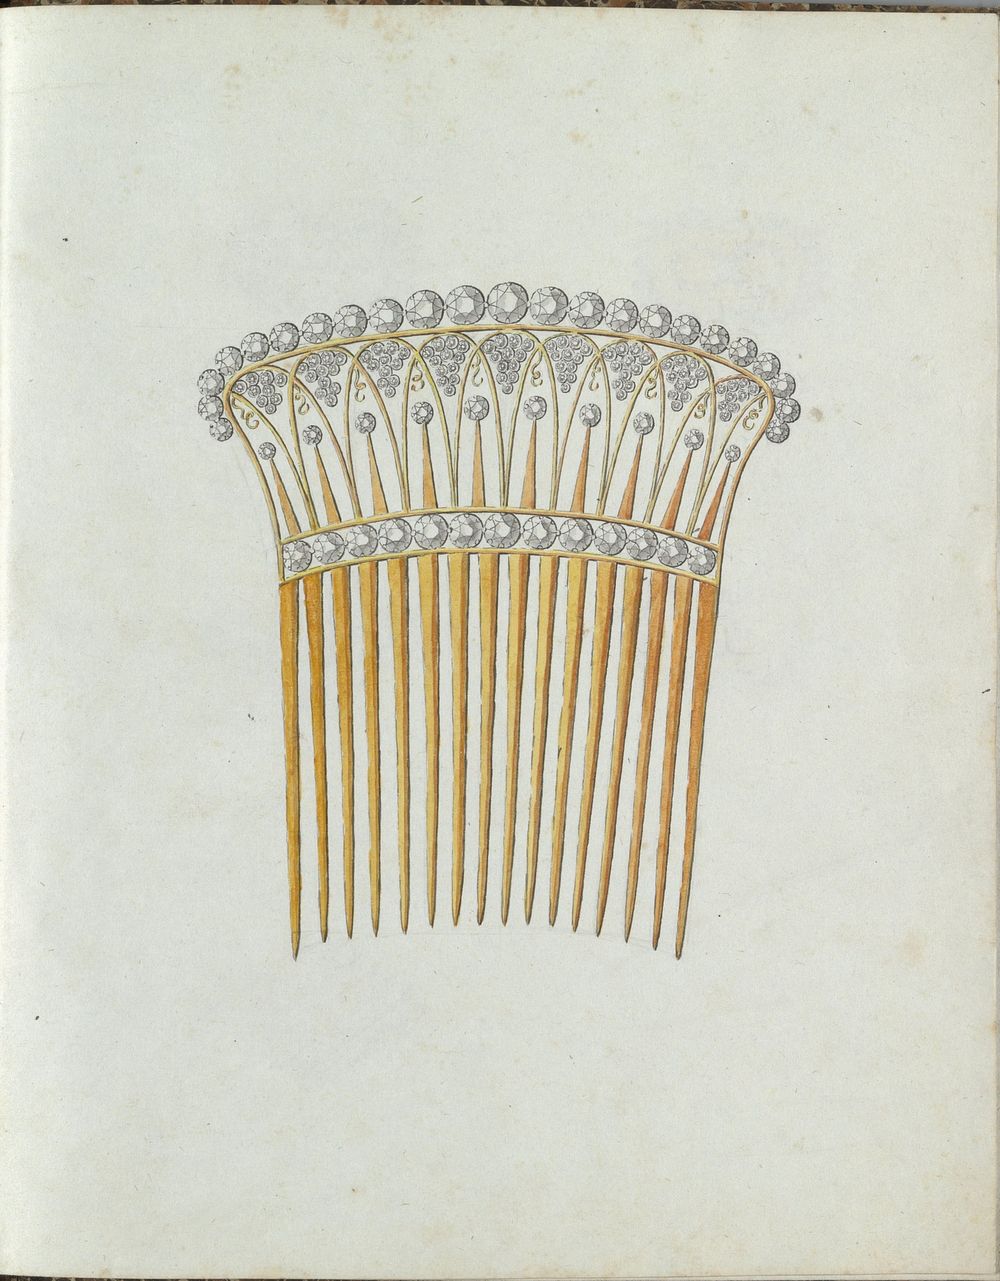 Haarkam met zestien tanden (c. 1800 - c. 1810) by Carl Friedrich Bärthel